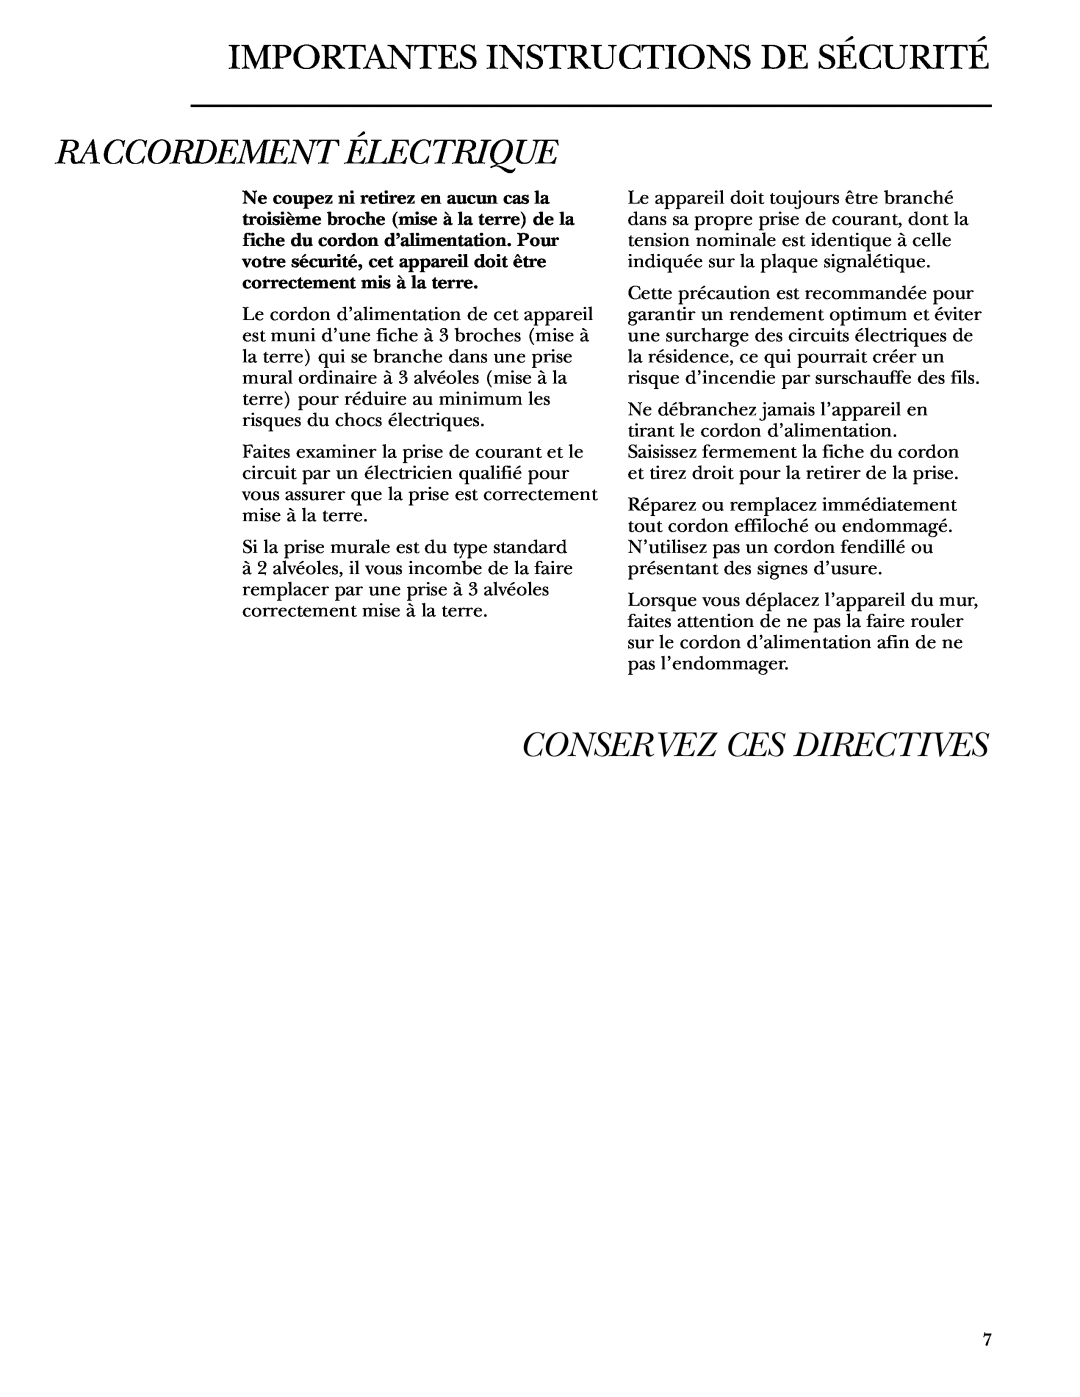 GE ZDBT240 owner manual Raccordement Électrique, Conservez Ces Directives, Importantes Instructions De Sécurité 